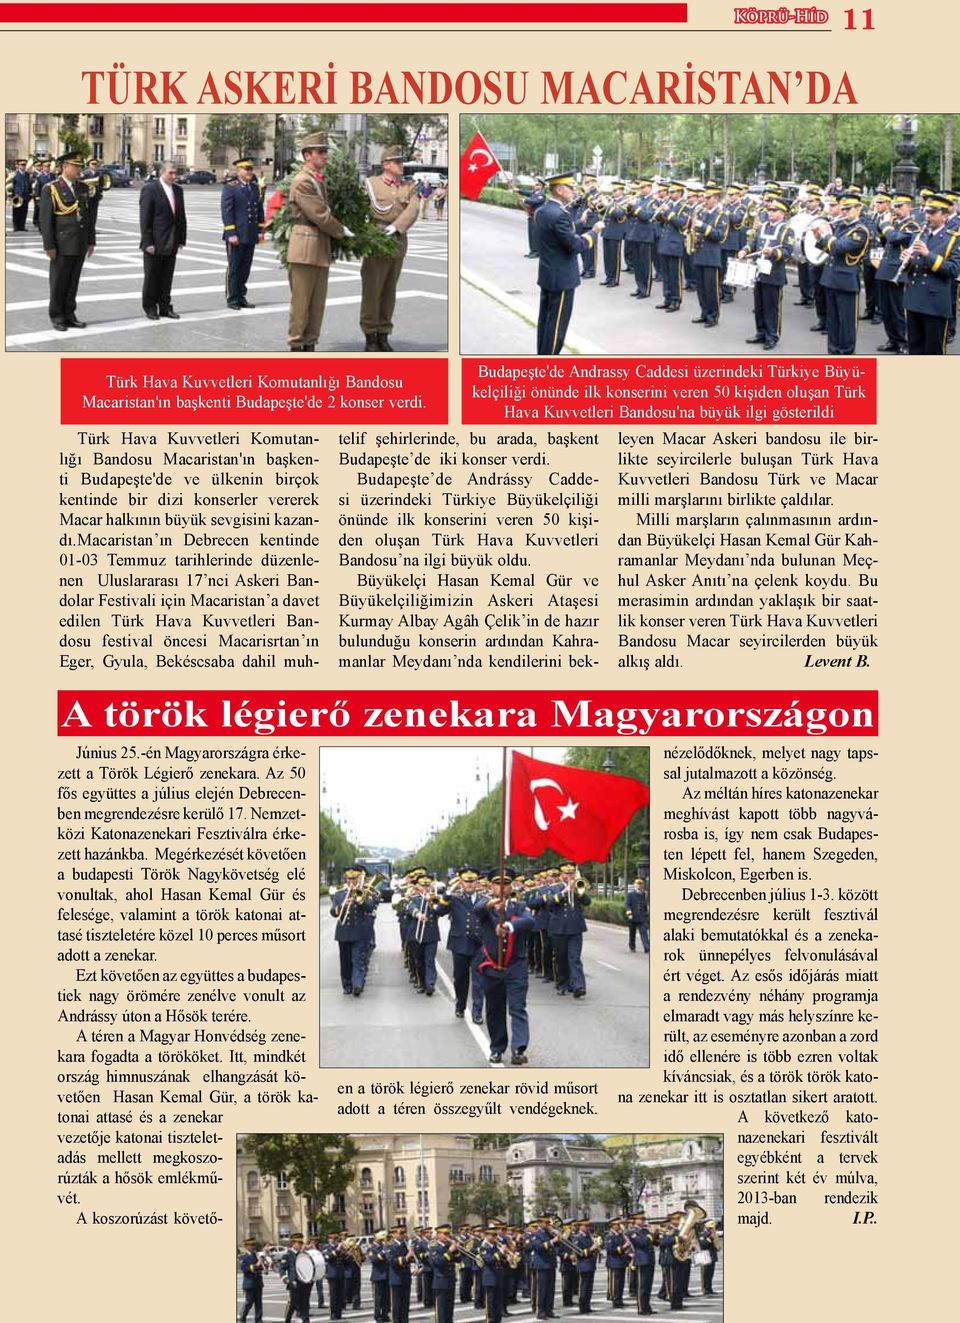 macaristan ın Debrecen kentinde 01-03 Temmuz tarihlerinde düzenlenen Uluslararası 17 nci Askeri Bandolar Festivali için Macaristan a davet edilen Türk Hava Kuvvetleri Bandosu festival öncesi